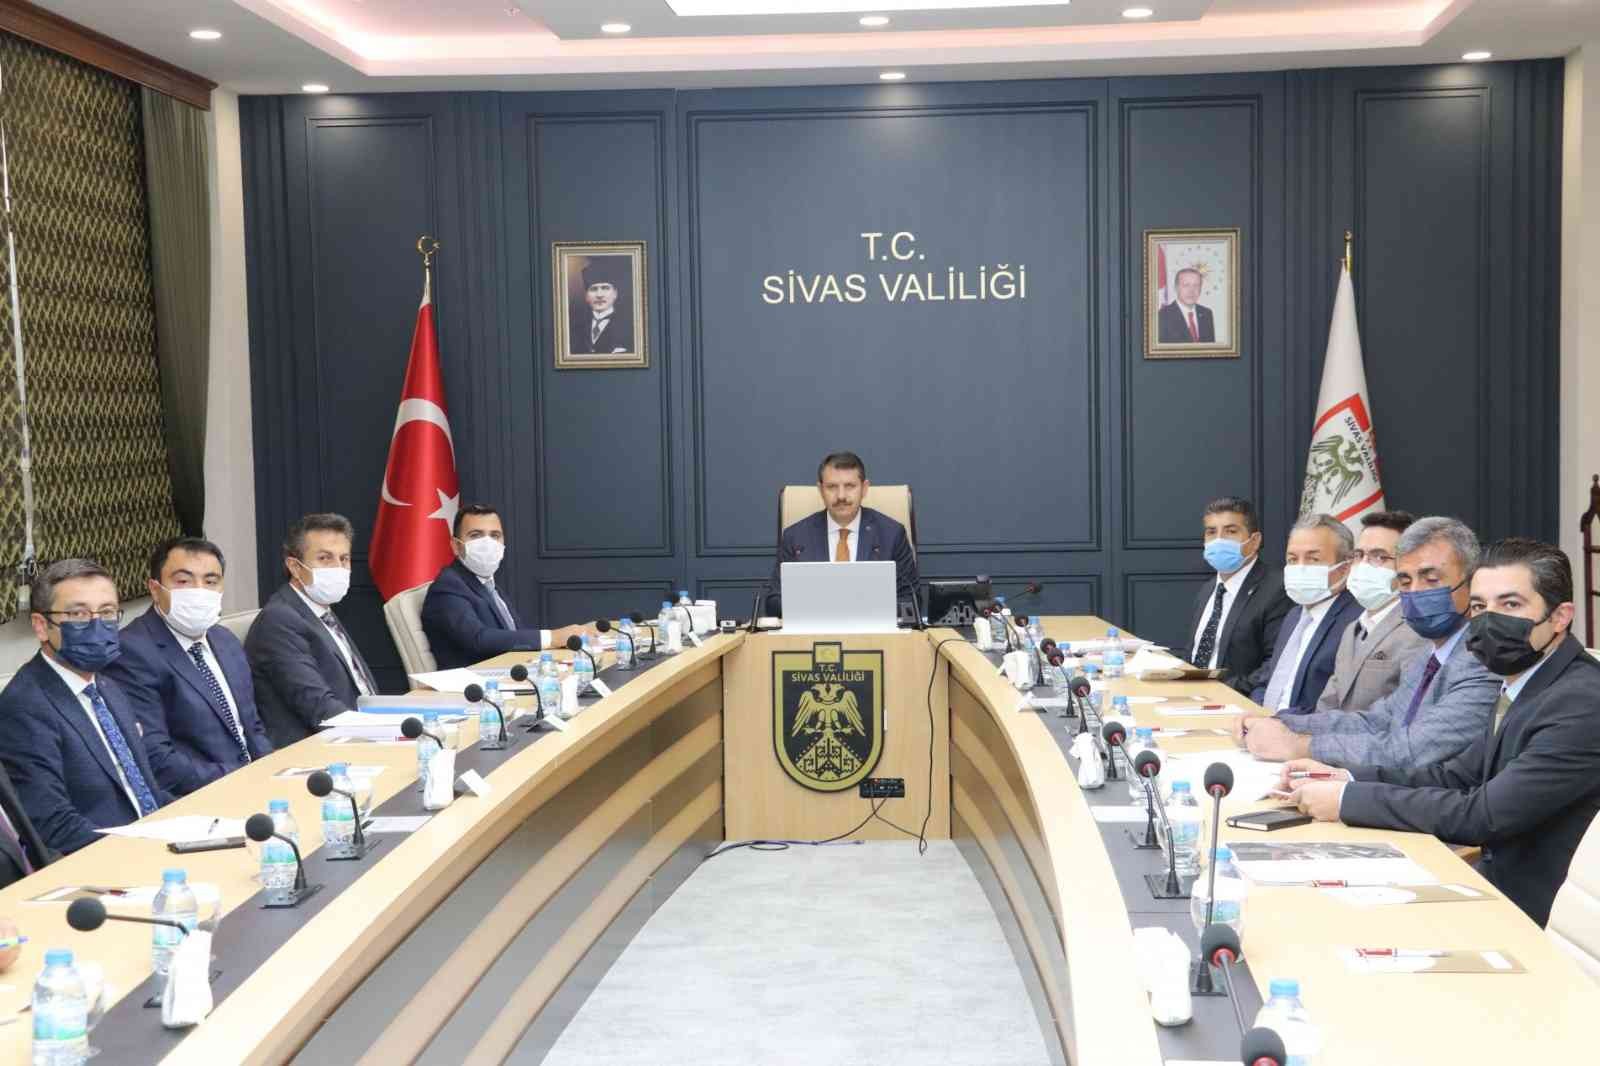 Sivas’ta eğitim yatırımları  masaya yatırıldı #sivas